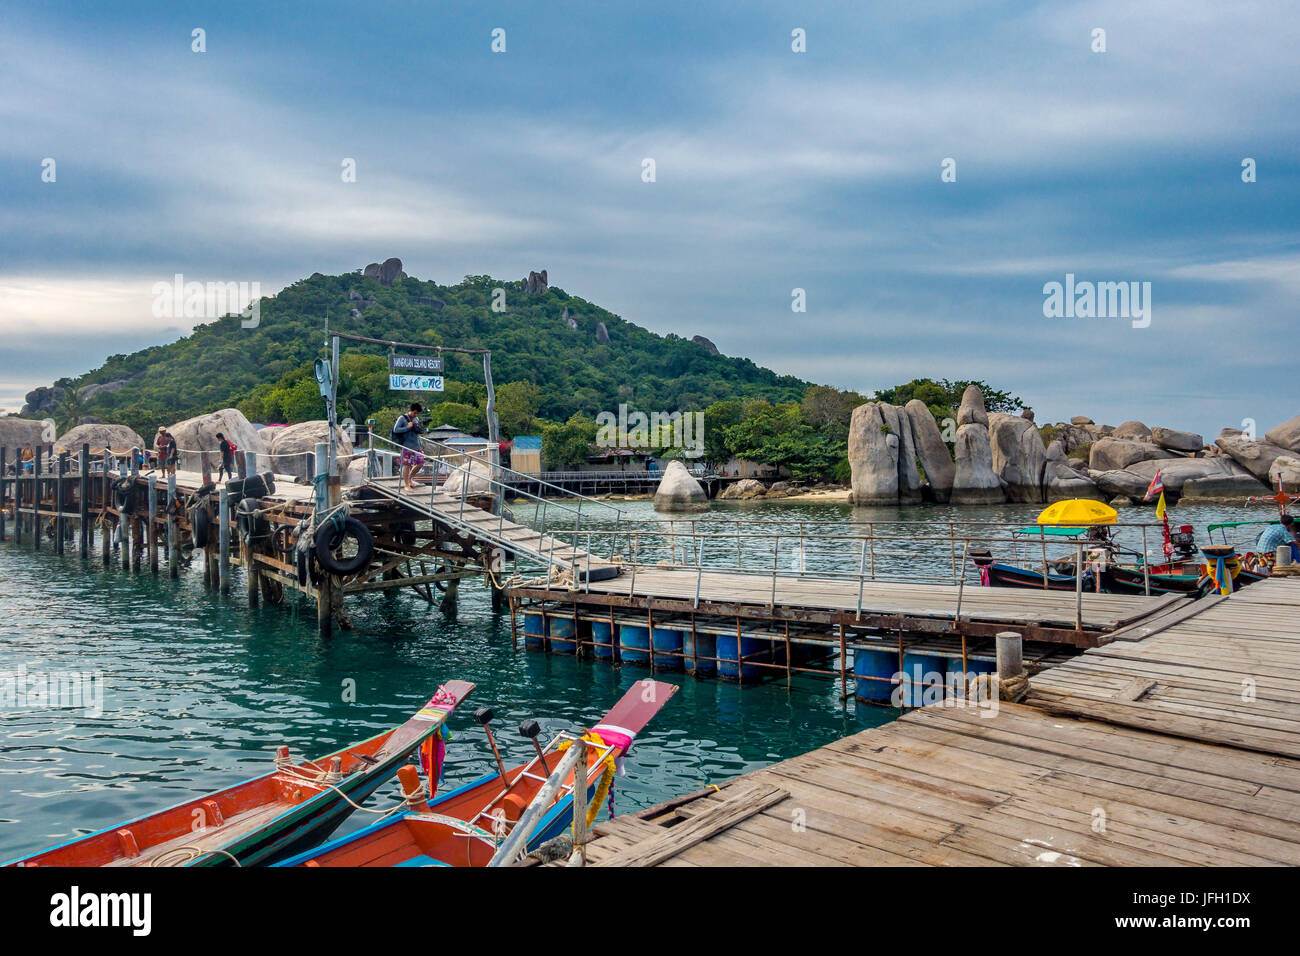 Barche colorate nel ponte in legno, jetty, isola di Koh Nang Yuan, anche Nangyuan, con Koh Tao, golf di thailandia, tailandia, Asia Foto Stock